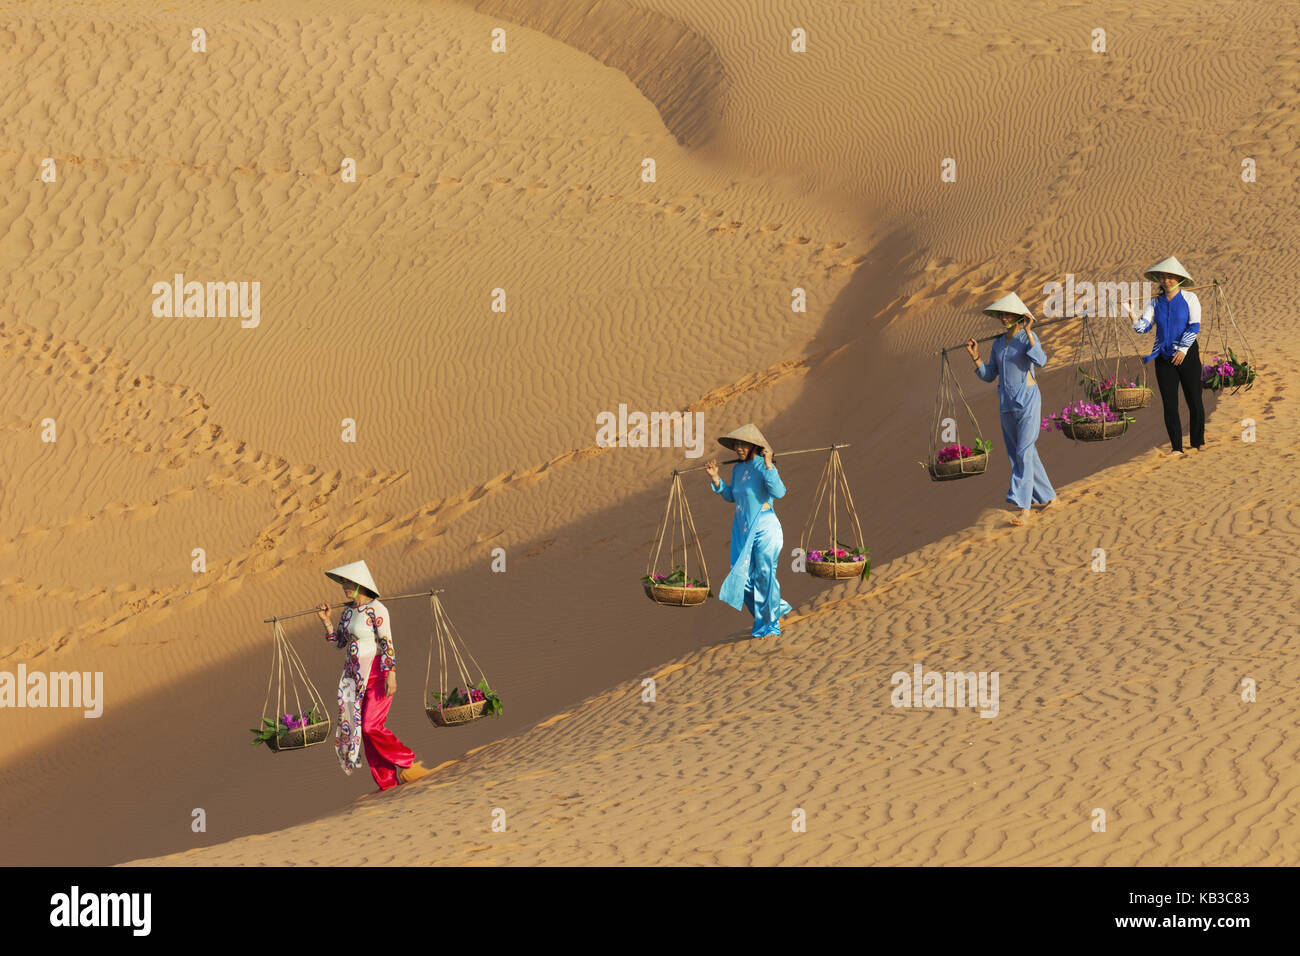 Il Vietnam, mui ne, dune di sabbia, le donne portano i costi, Foto Stock